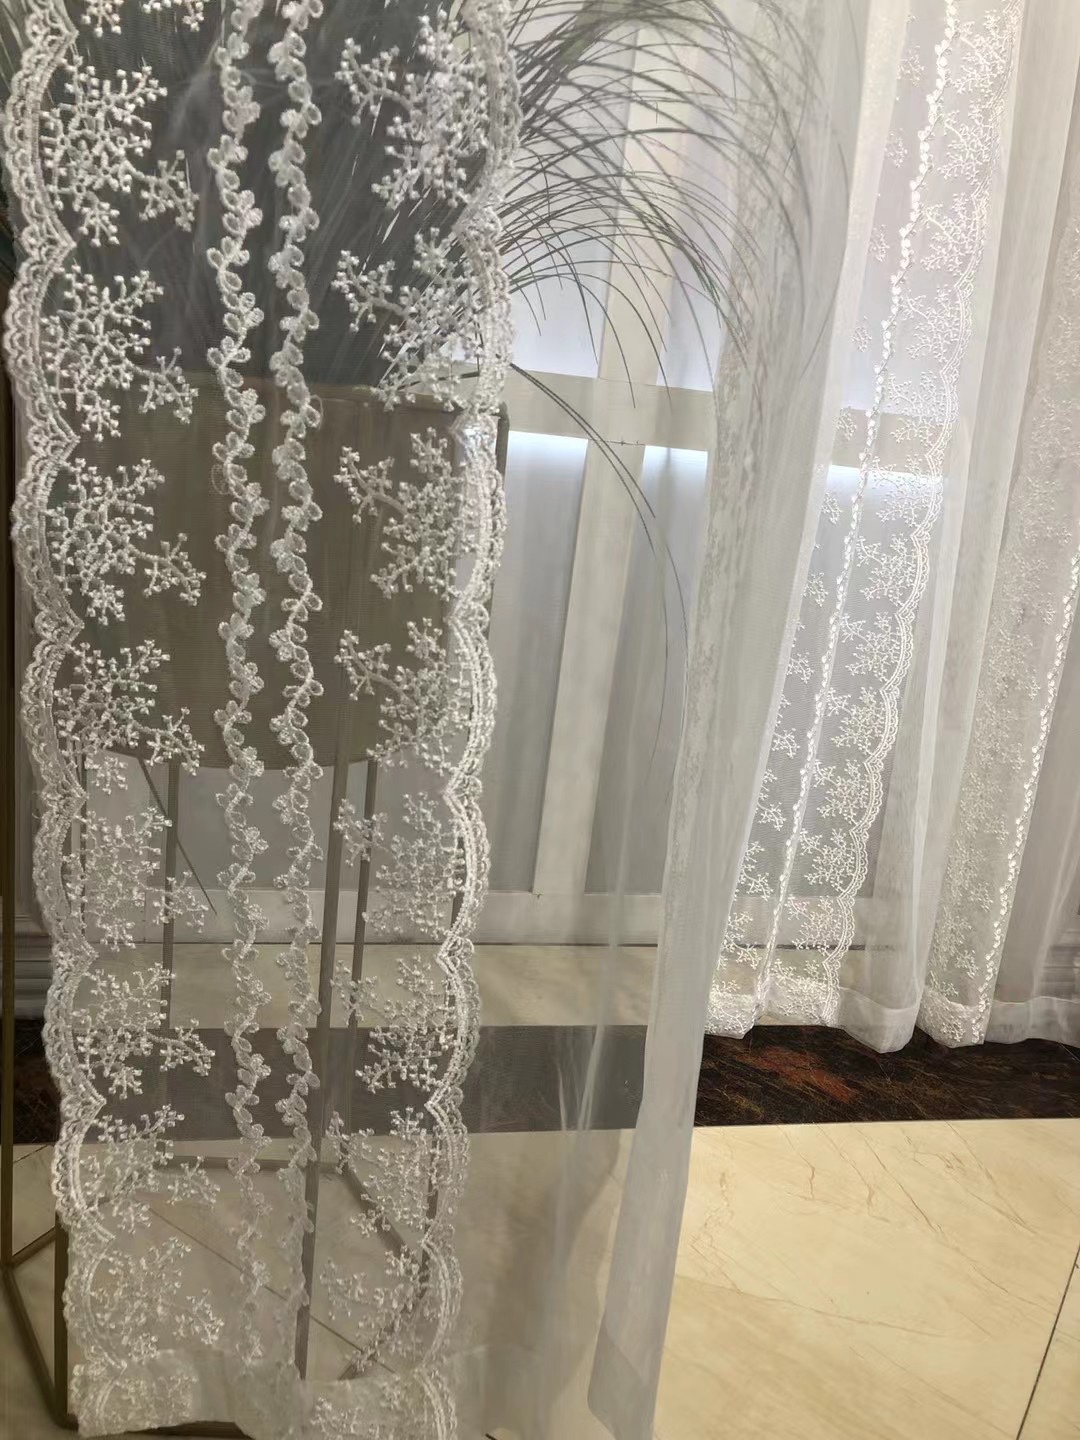 飘窗卧室窗帘褶皱 饰蕾丝复古刺绣透光纱帘北欧韩式 浪漫美式 法式 装